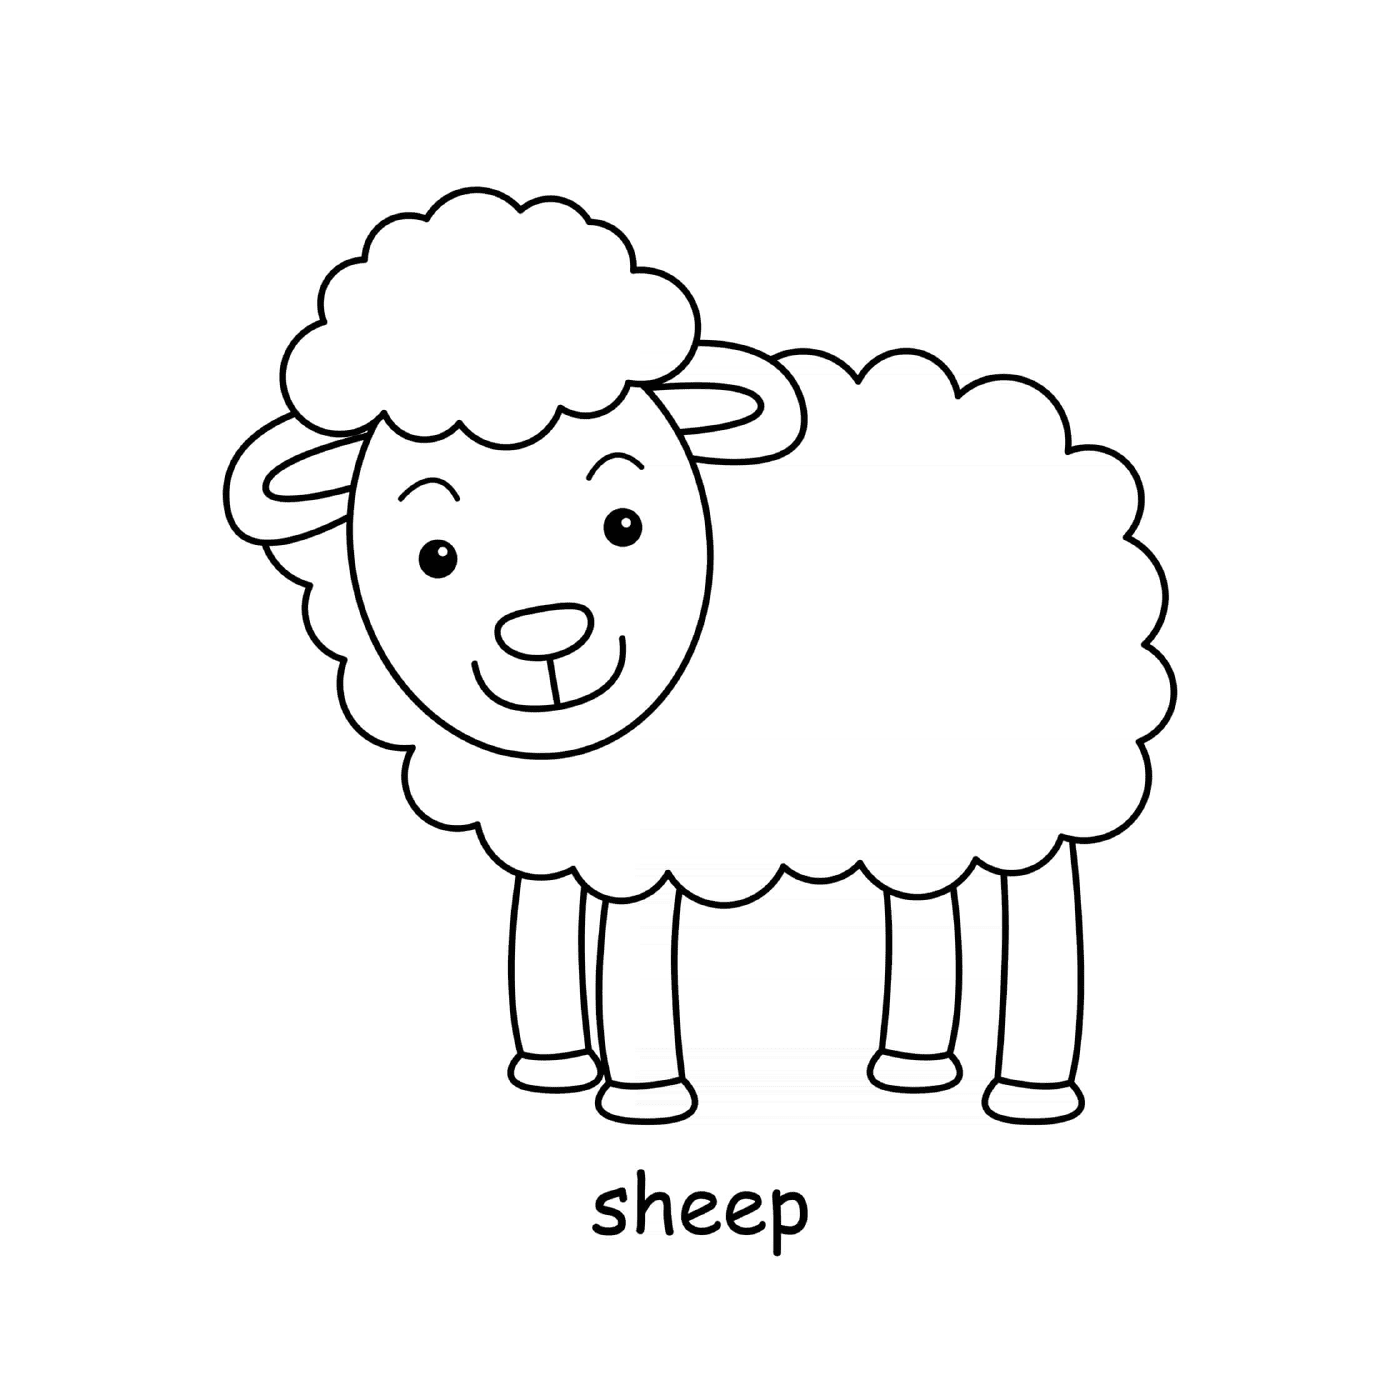  农场的动物羊 